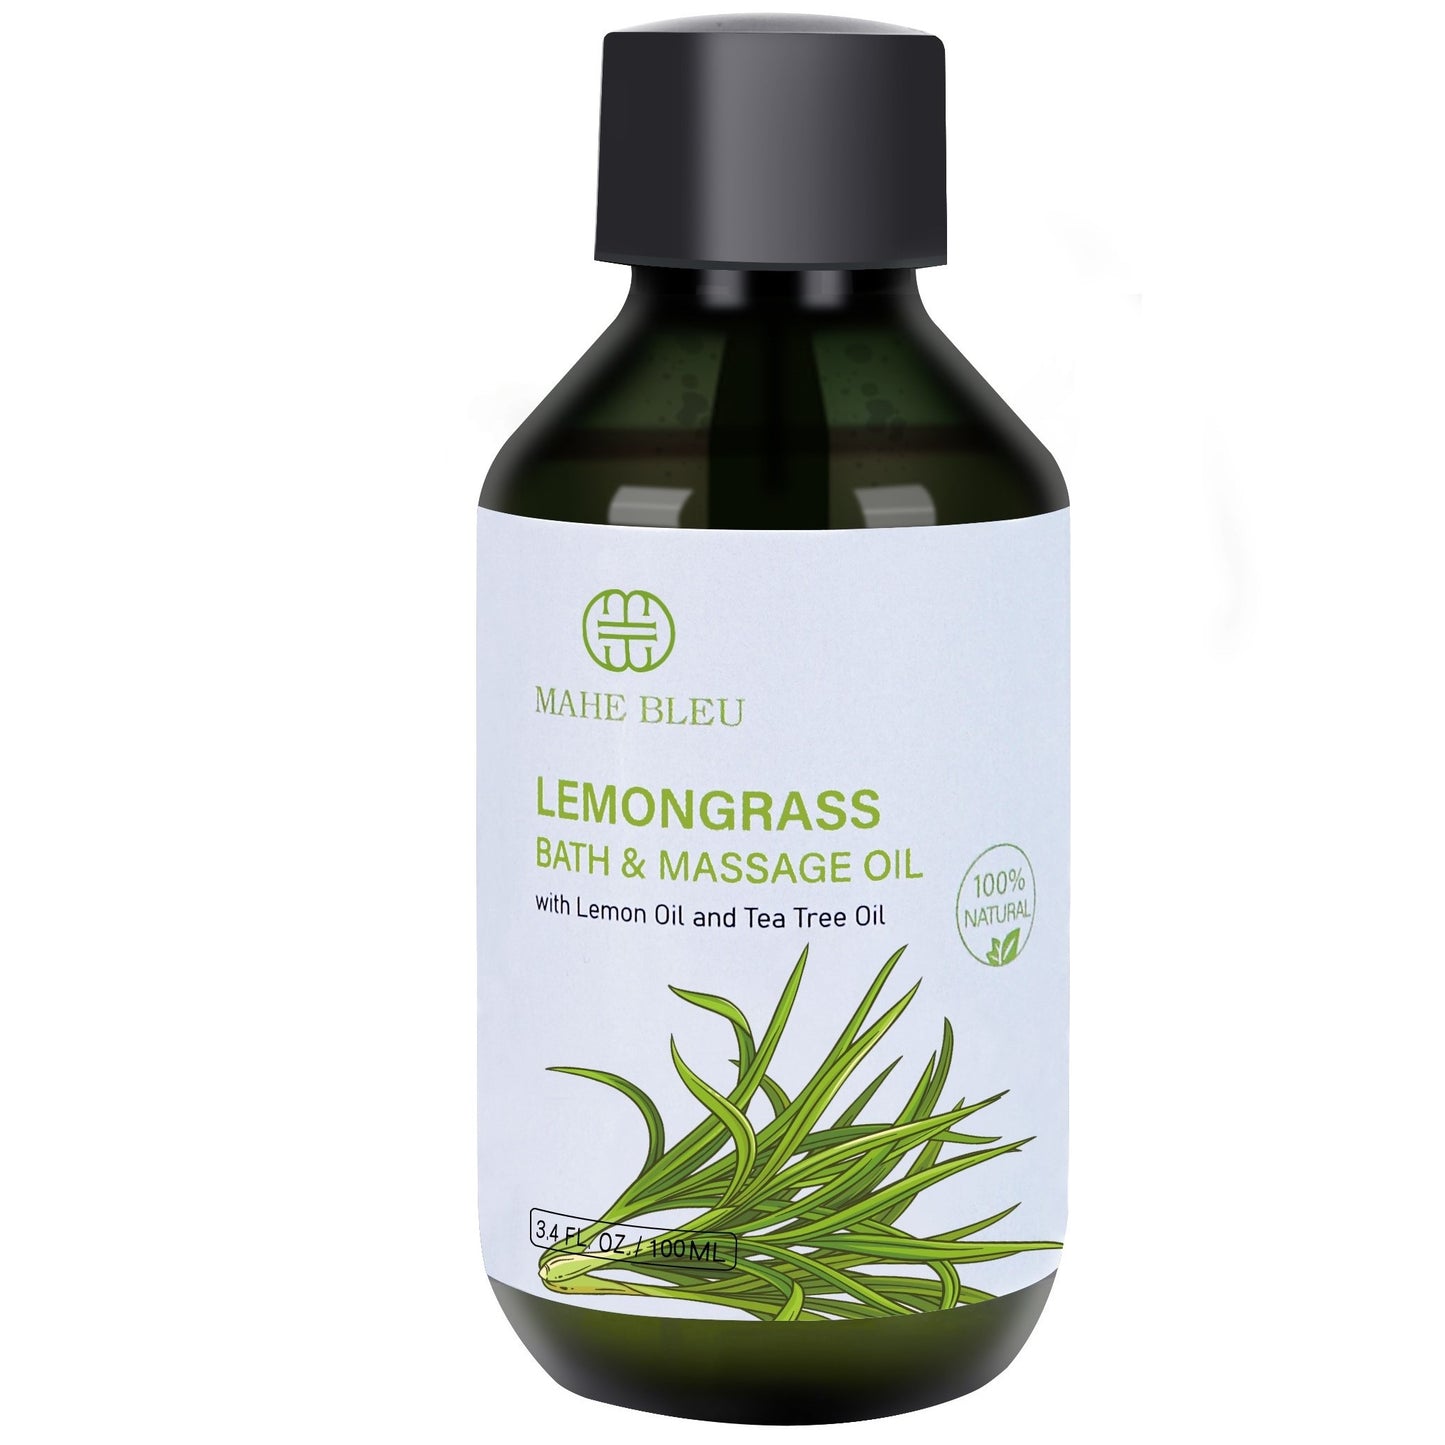 Lemongrass Bath & Massage Oil